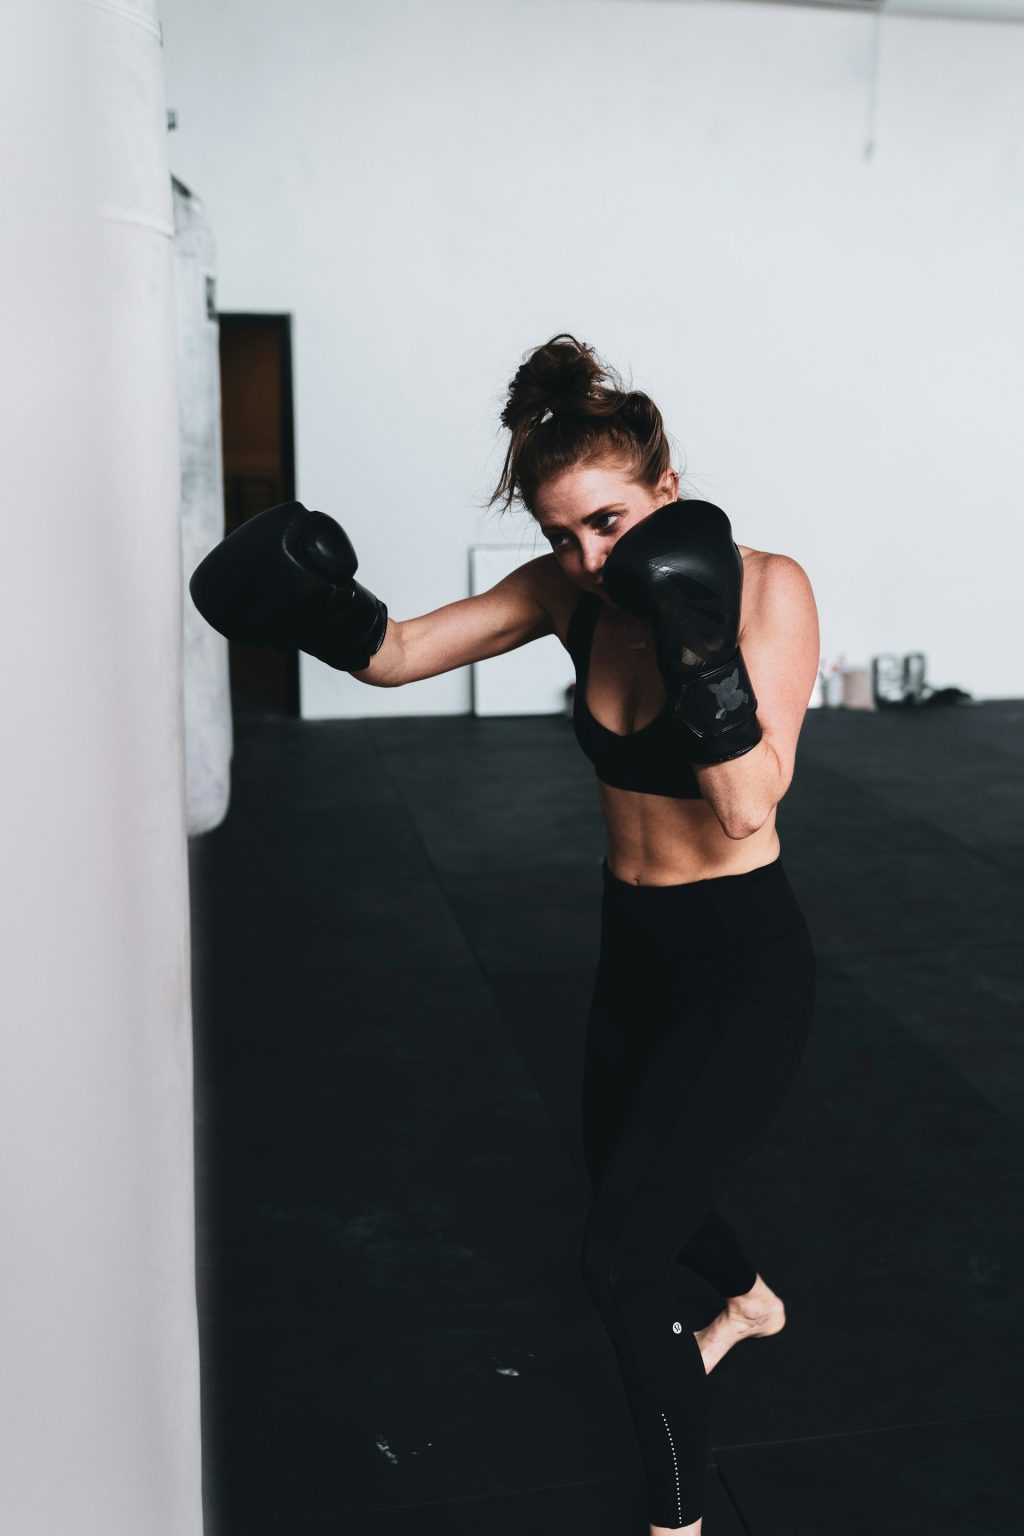 Boxing ở nữ giới và những điều cần biết